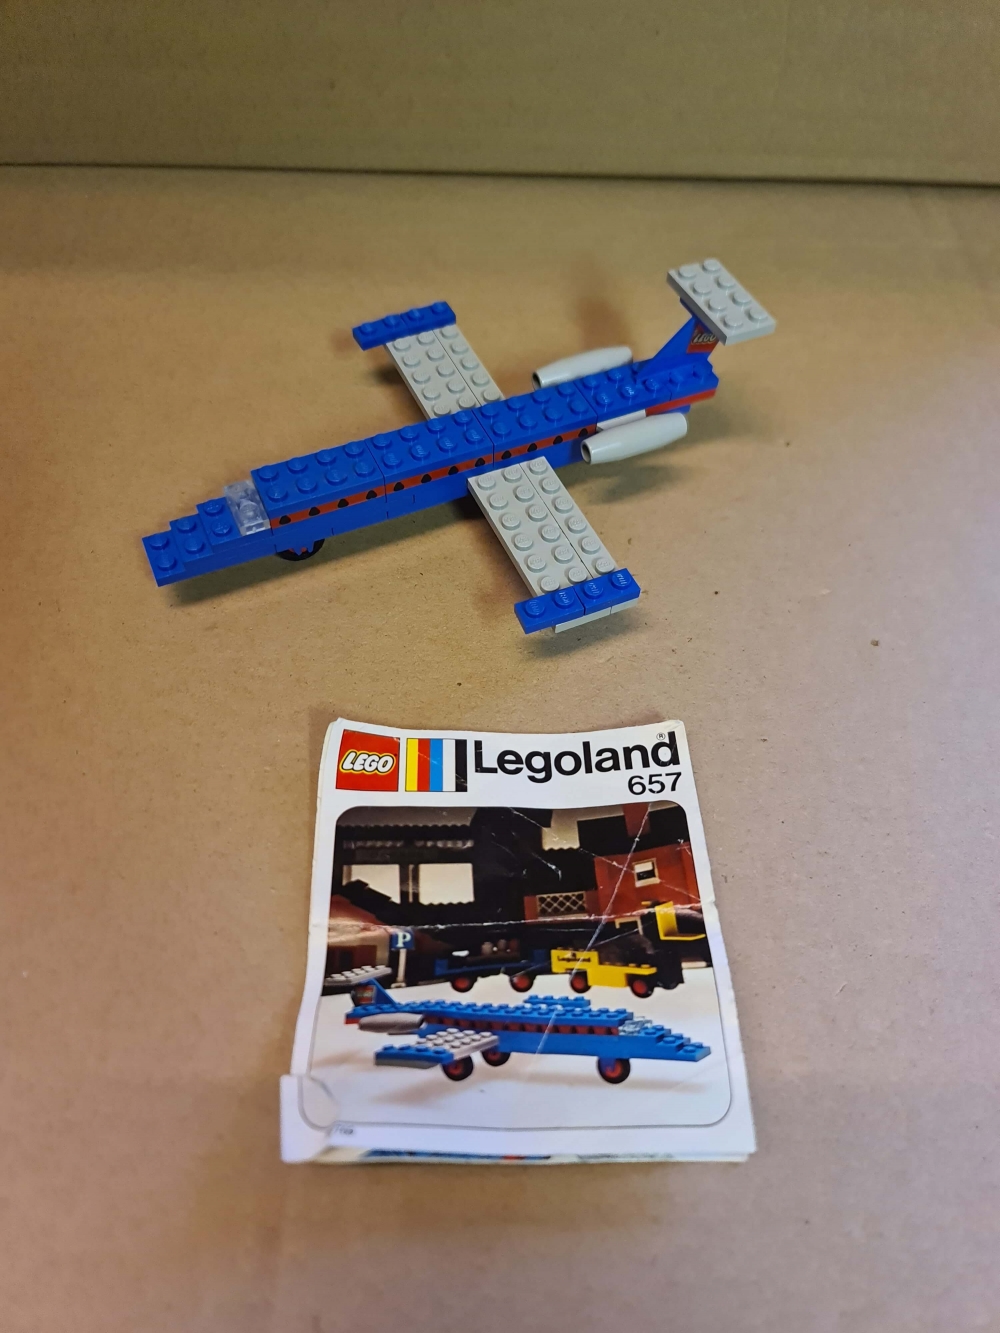 Sett 657 fra Lego : Legoland serien.

Helt komplett med manual. (Manual er ikke så bra og er delt.)
Settet i brukt tilstand. Merker forekommer da alle brikker er til settet og PatPend.

